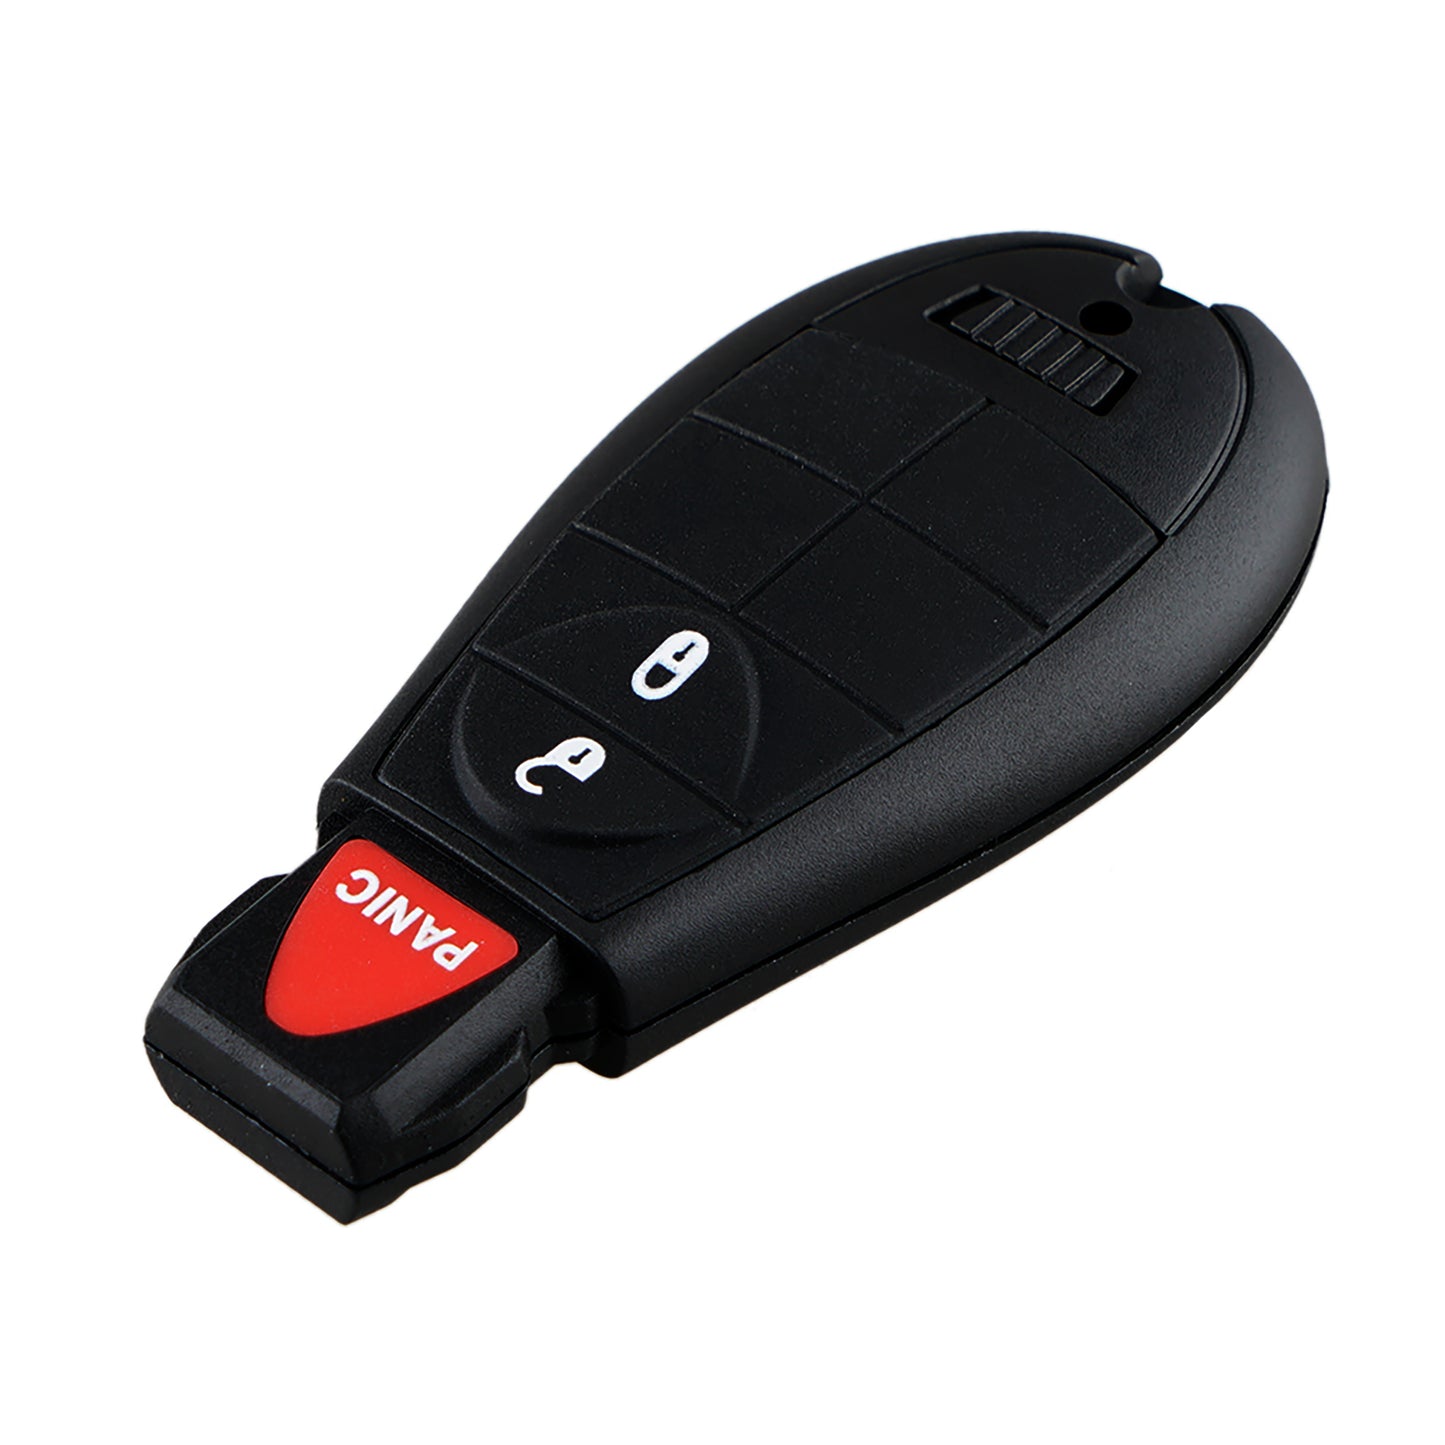 3 Buttons Keyless Entry Fob Remote Car Key For 2013 - 2014 Cadillac ATS XTS FCC ID: M3N5WY783X IYZ-C01C SKU : J26